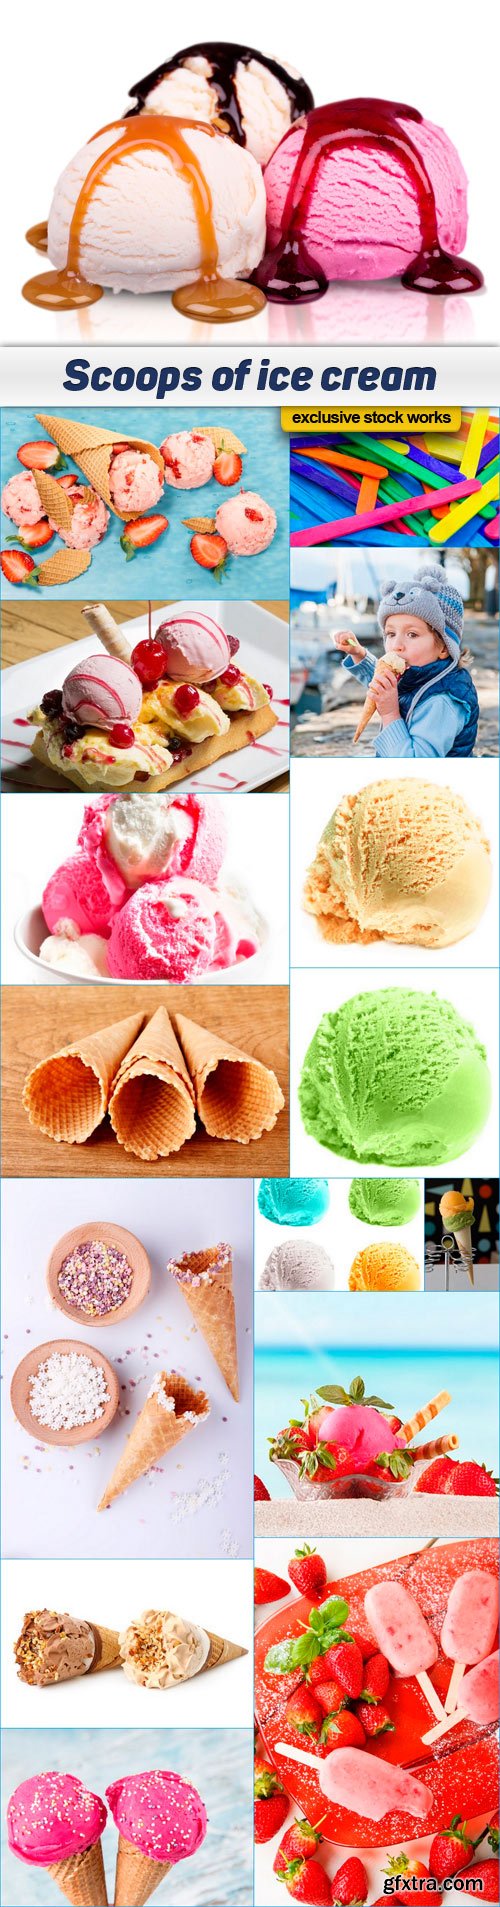 Scoops of ice cream 16x JPEG